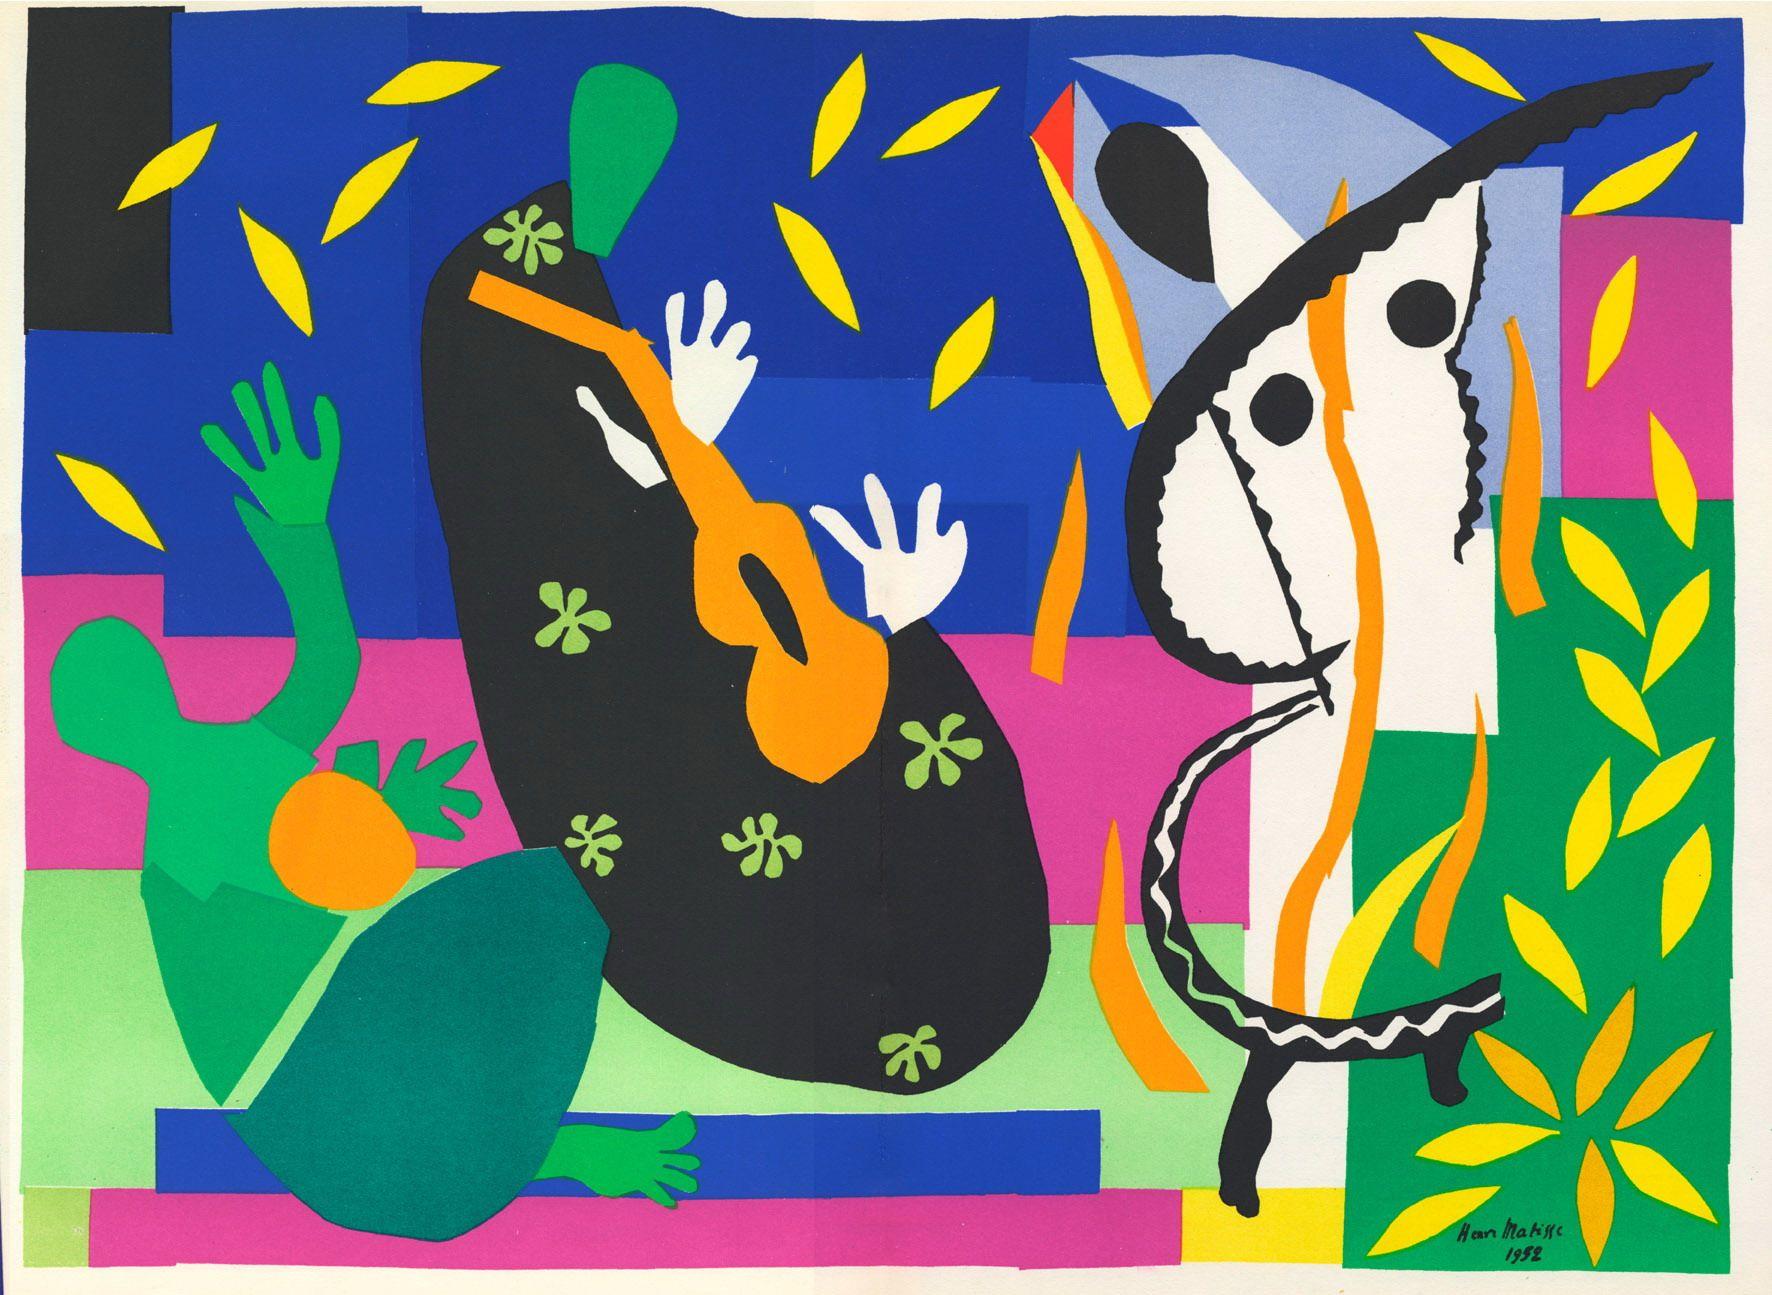 1440x1708px Henri Matisse (345.67 KB).07.2015